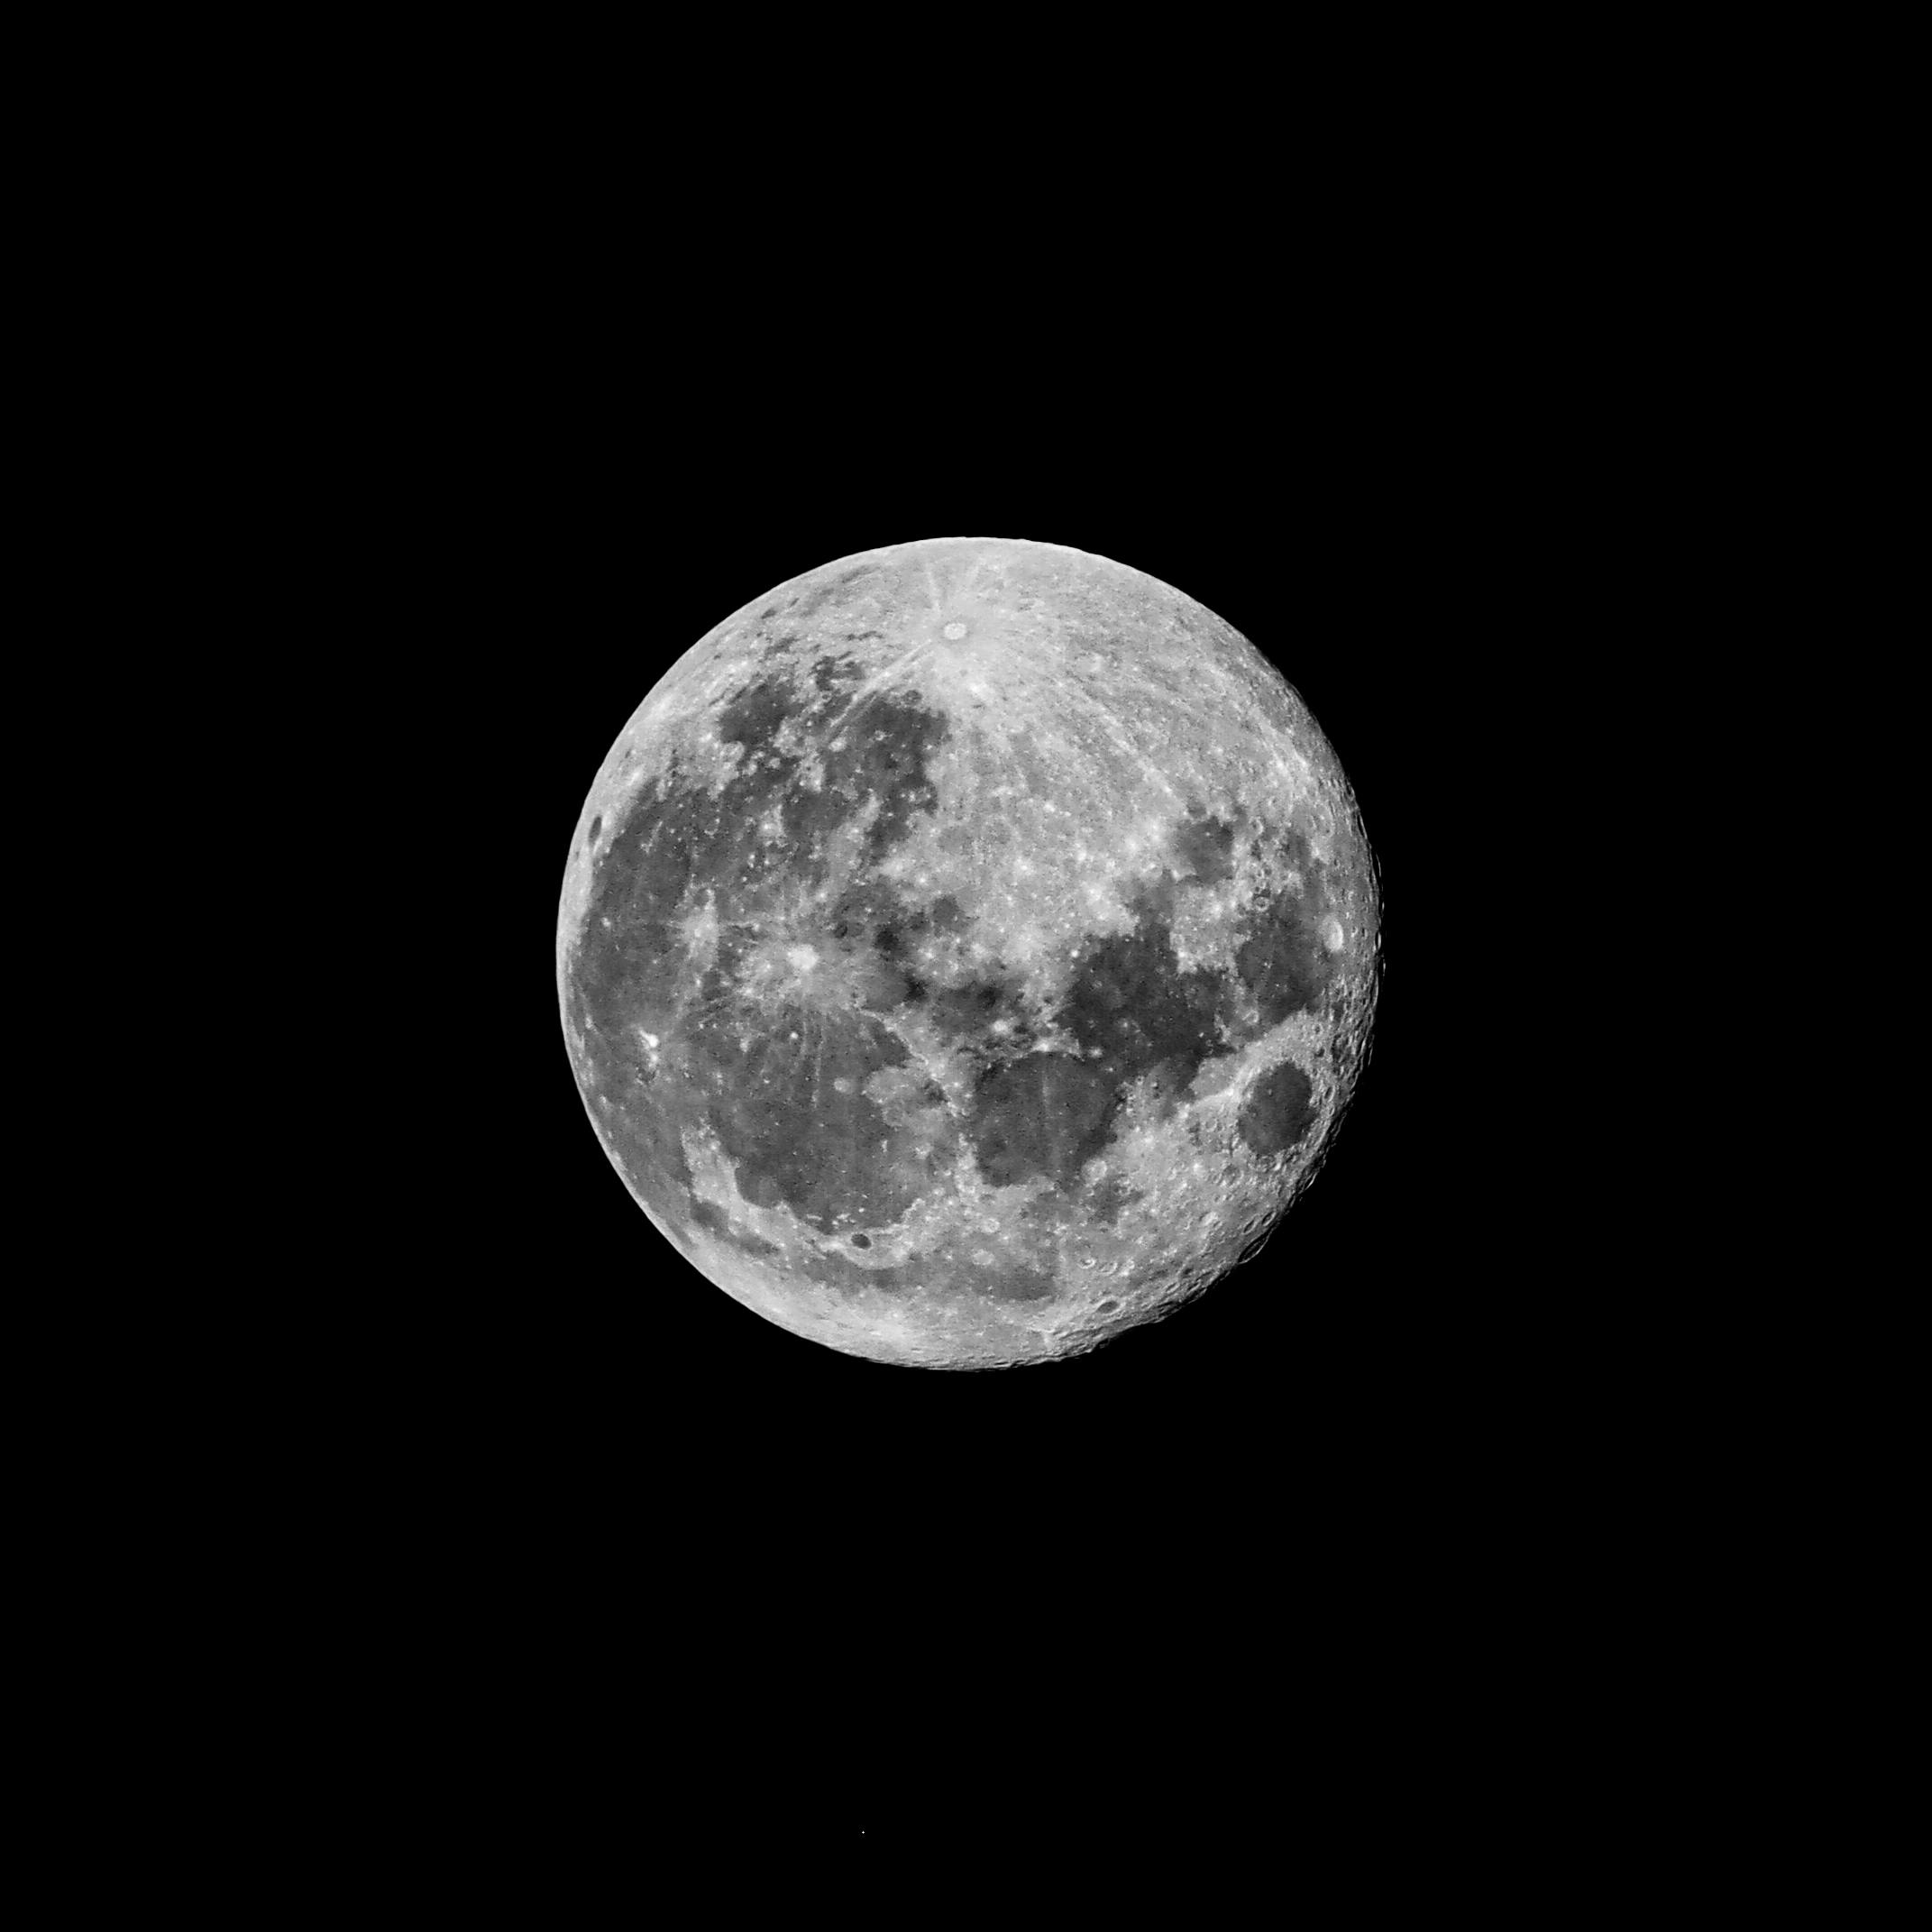 Mặt trăng đầy đủ trên nền đen thật đẹp lung linh và ấn tượng. Ngắm nhìn những chi tiết đầy sắc nét và tuyệt vời trên bề mặt trăng, cùng những ánh sáng lung linh phản chiếu trên đó, ta như được đắm mình trong không gian bát ngát và đầy cảm xúc.